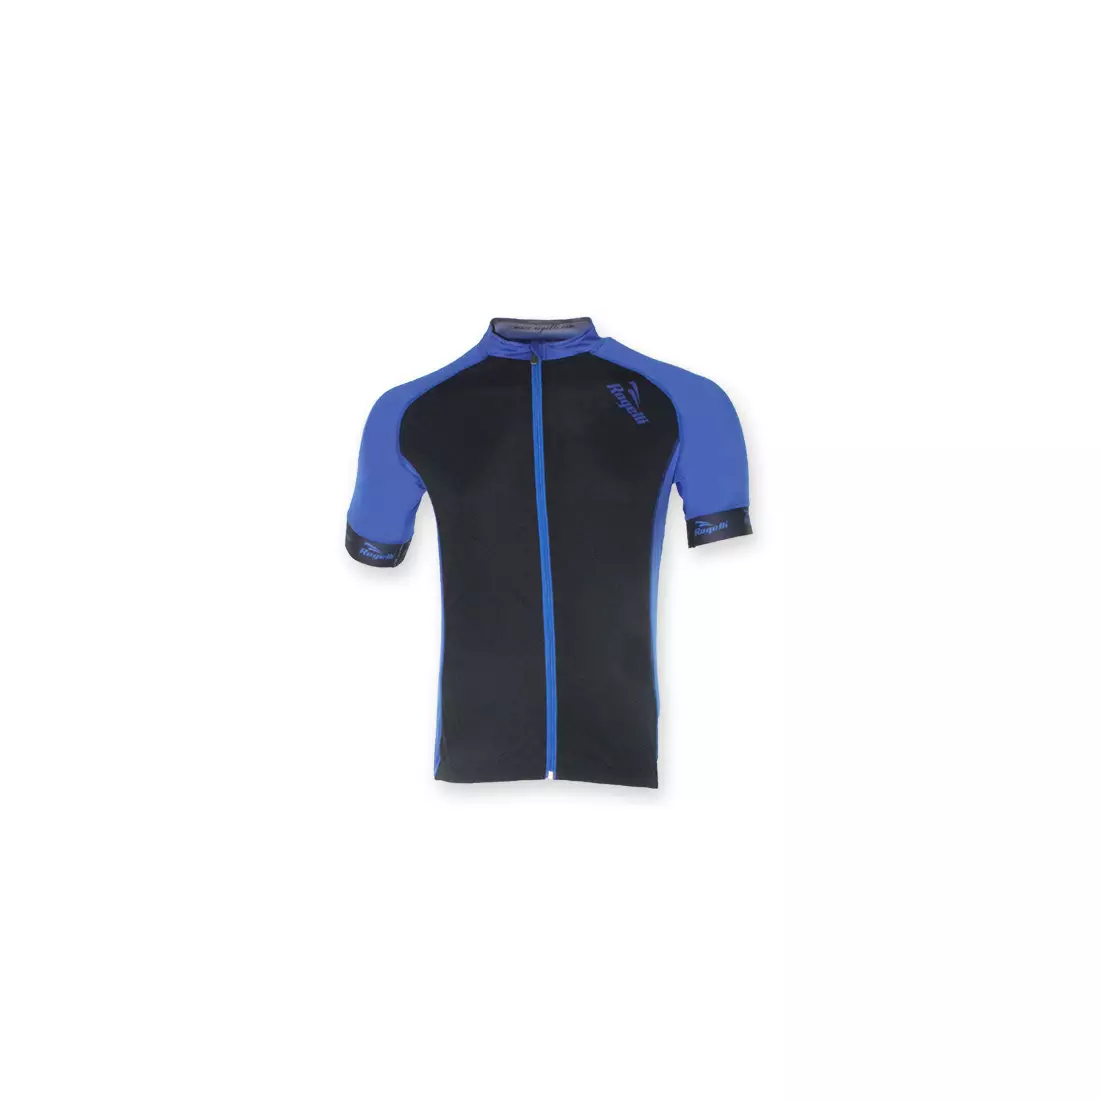 ROGELLI PRALI - pánský cyklistický dres, barva: černá a modrá